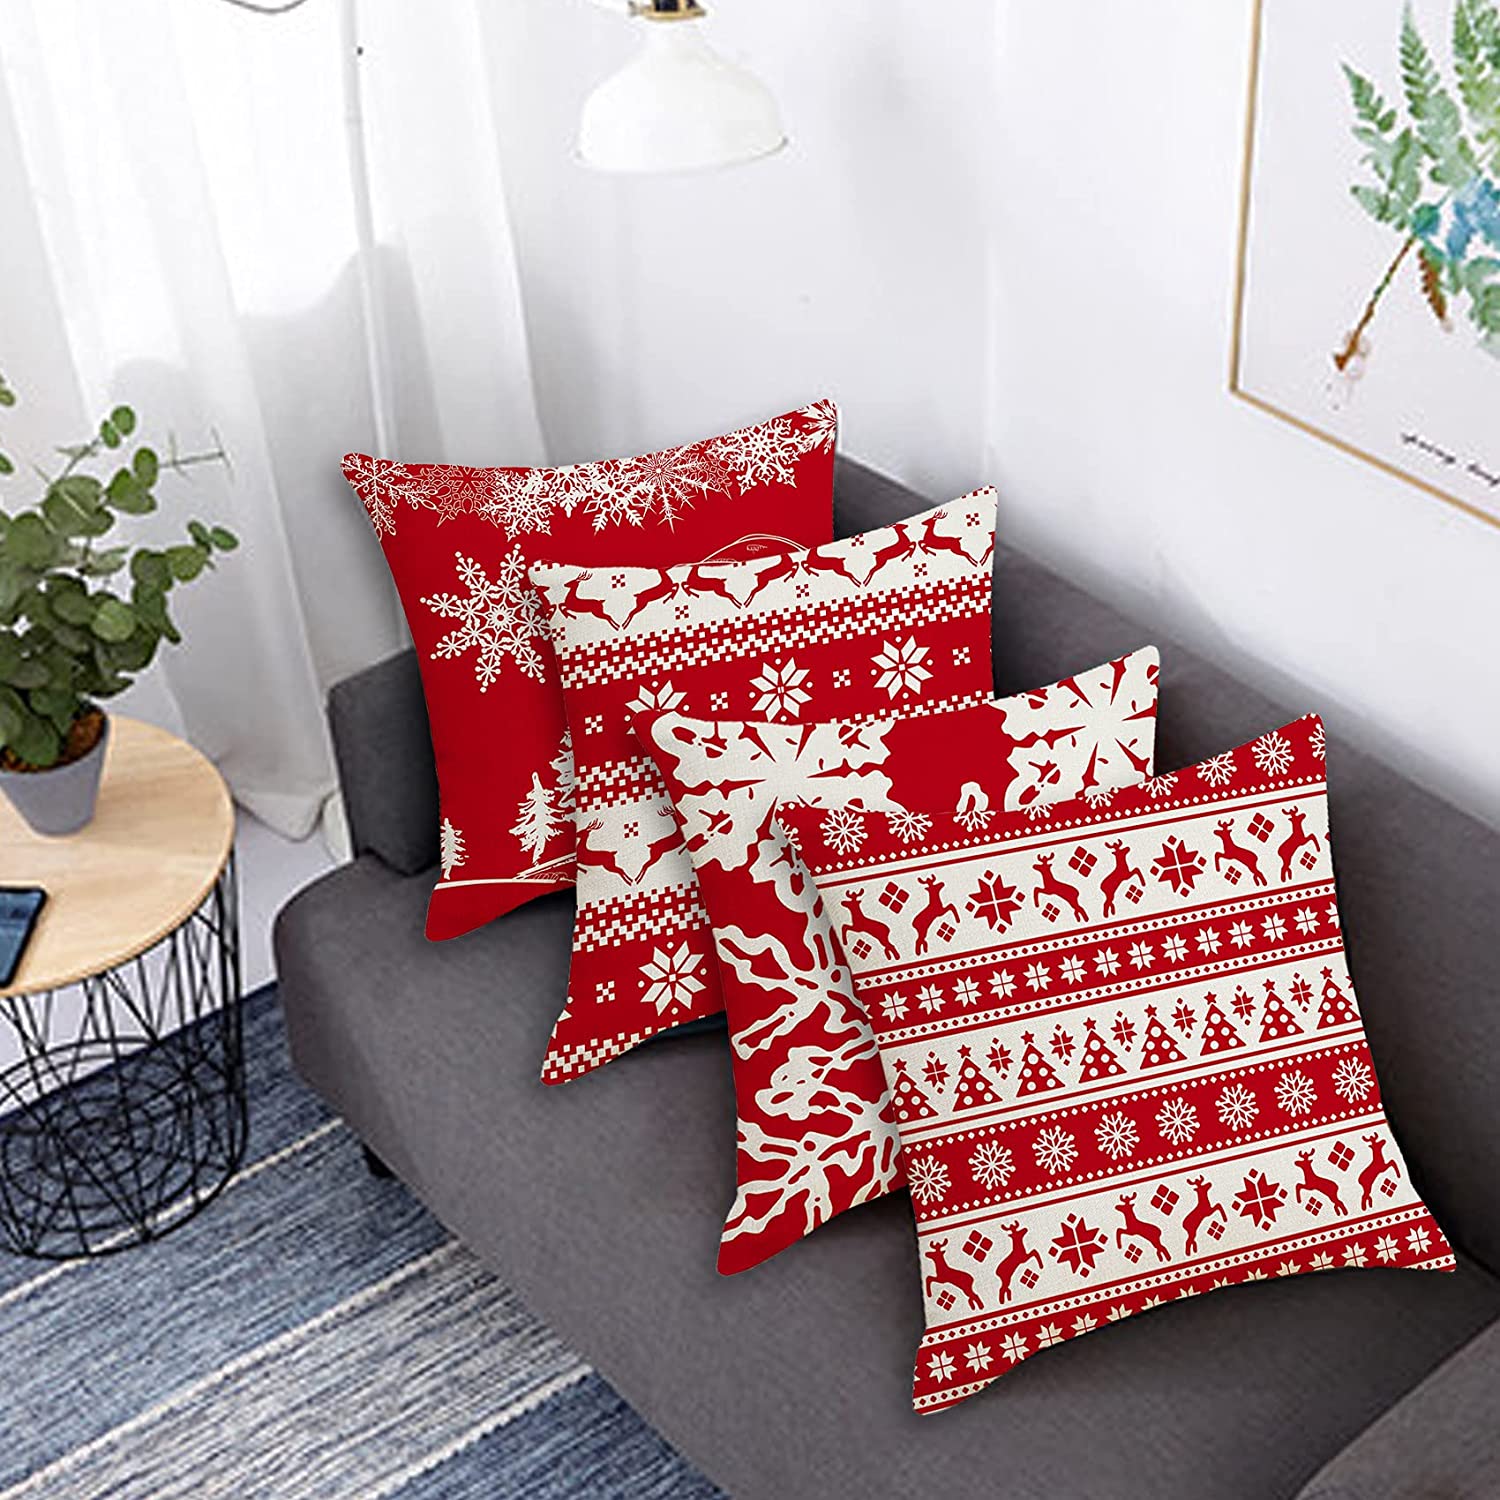 Trang hoàng không gian phòng khách với những chiếc gối tựa sofa đậm chất Giáng sinh có mức giá chưa đến 50k - Ảnh 11.